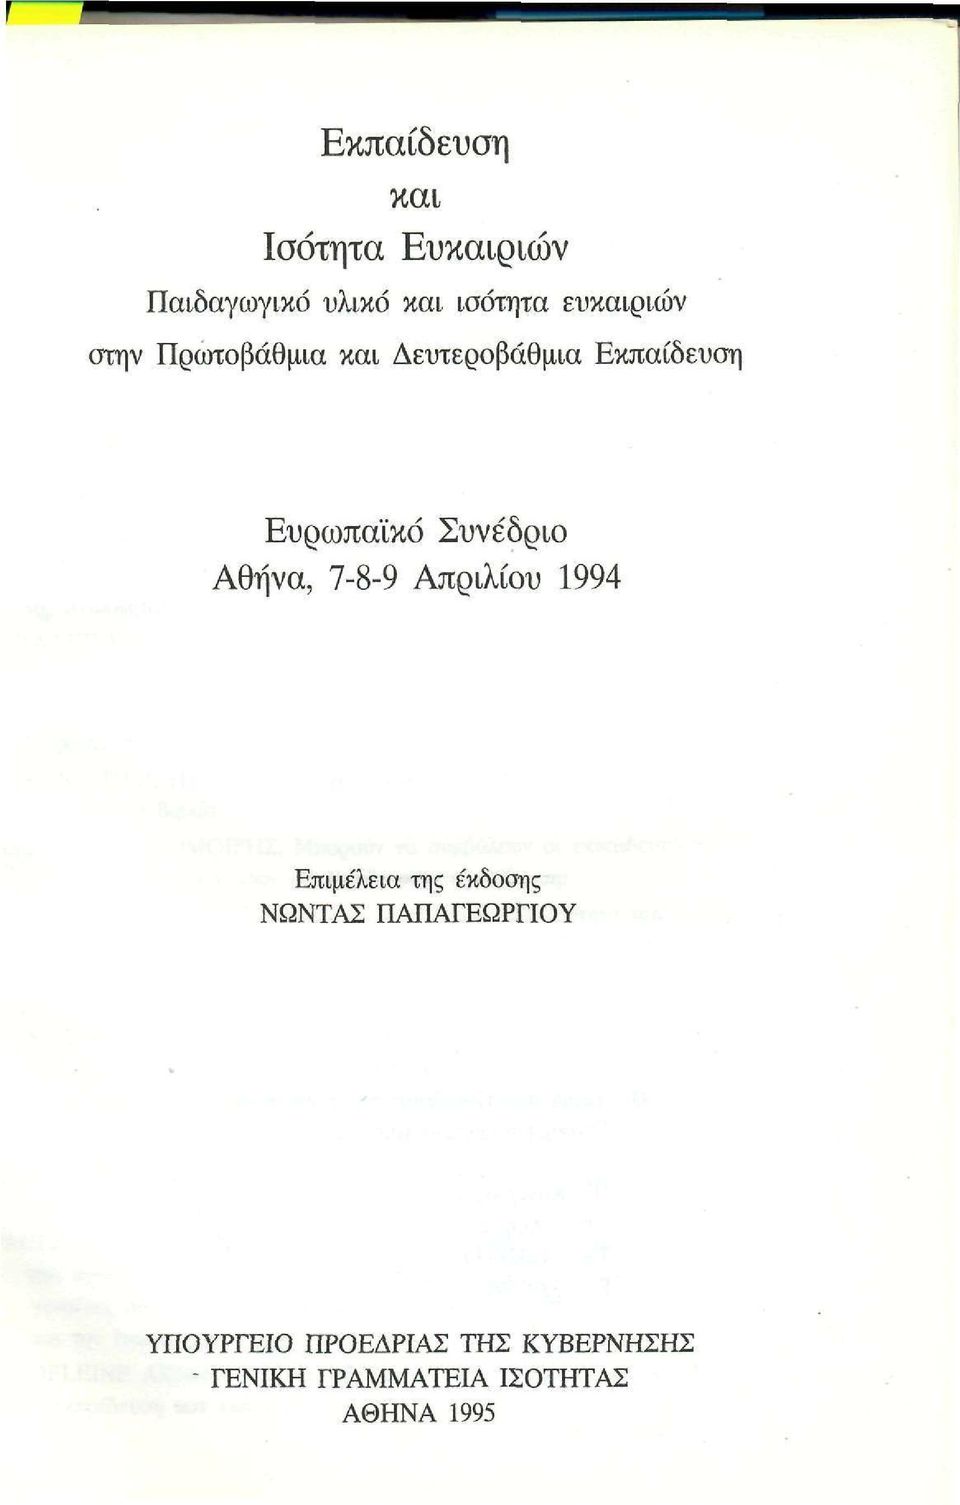 Συνέδριο Αθήνα, 7-8-9 Απριλίου 1994 Επιμέλεια της έκδοσης ΝΩΝΤΑΣ